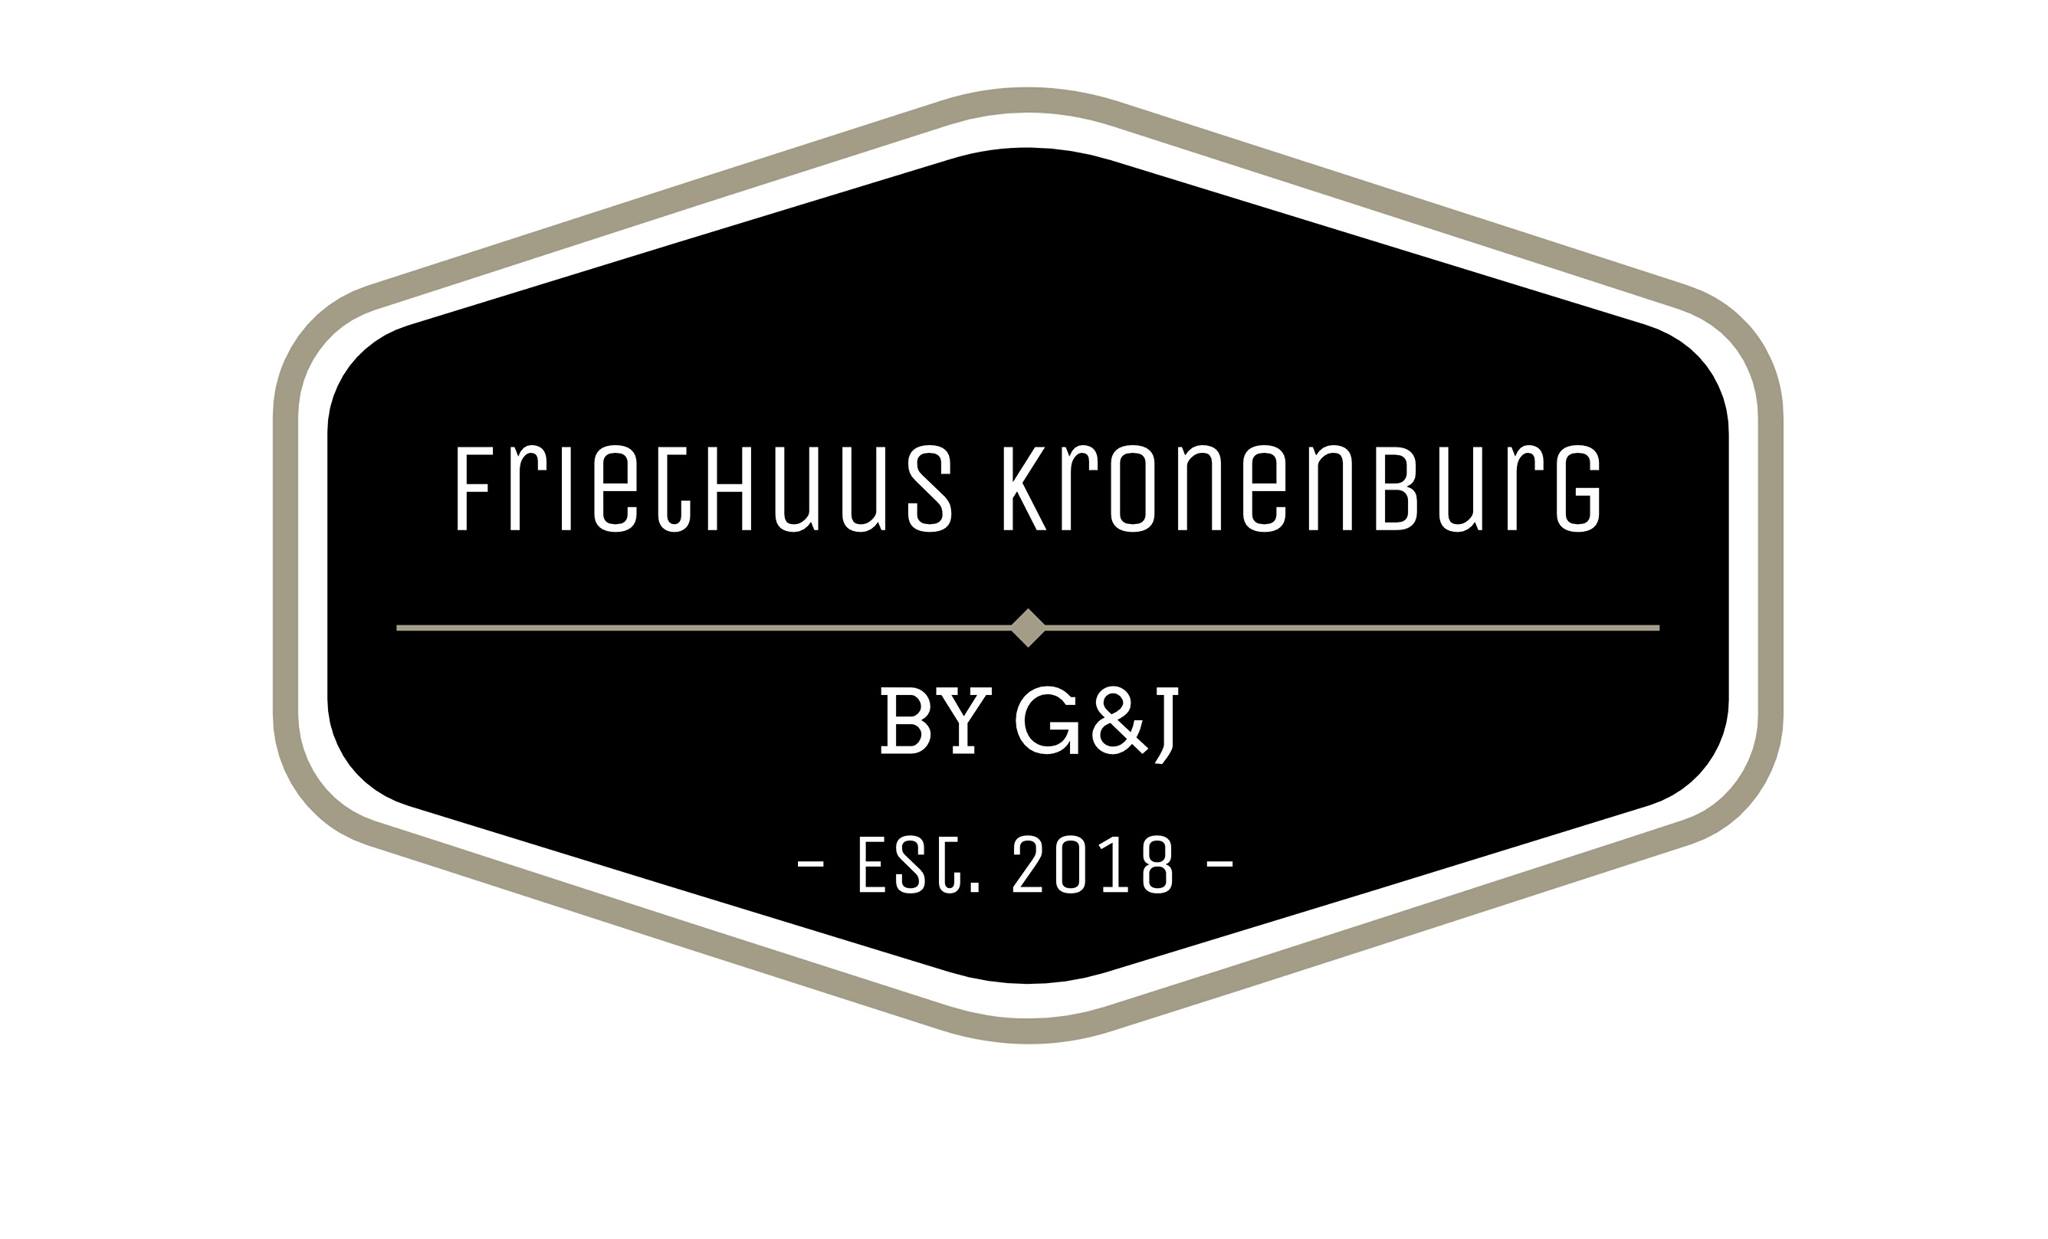 Friethuus Kronenburg